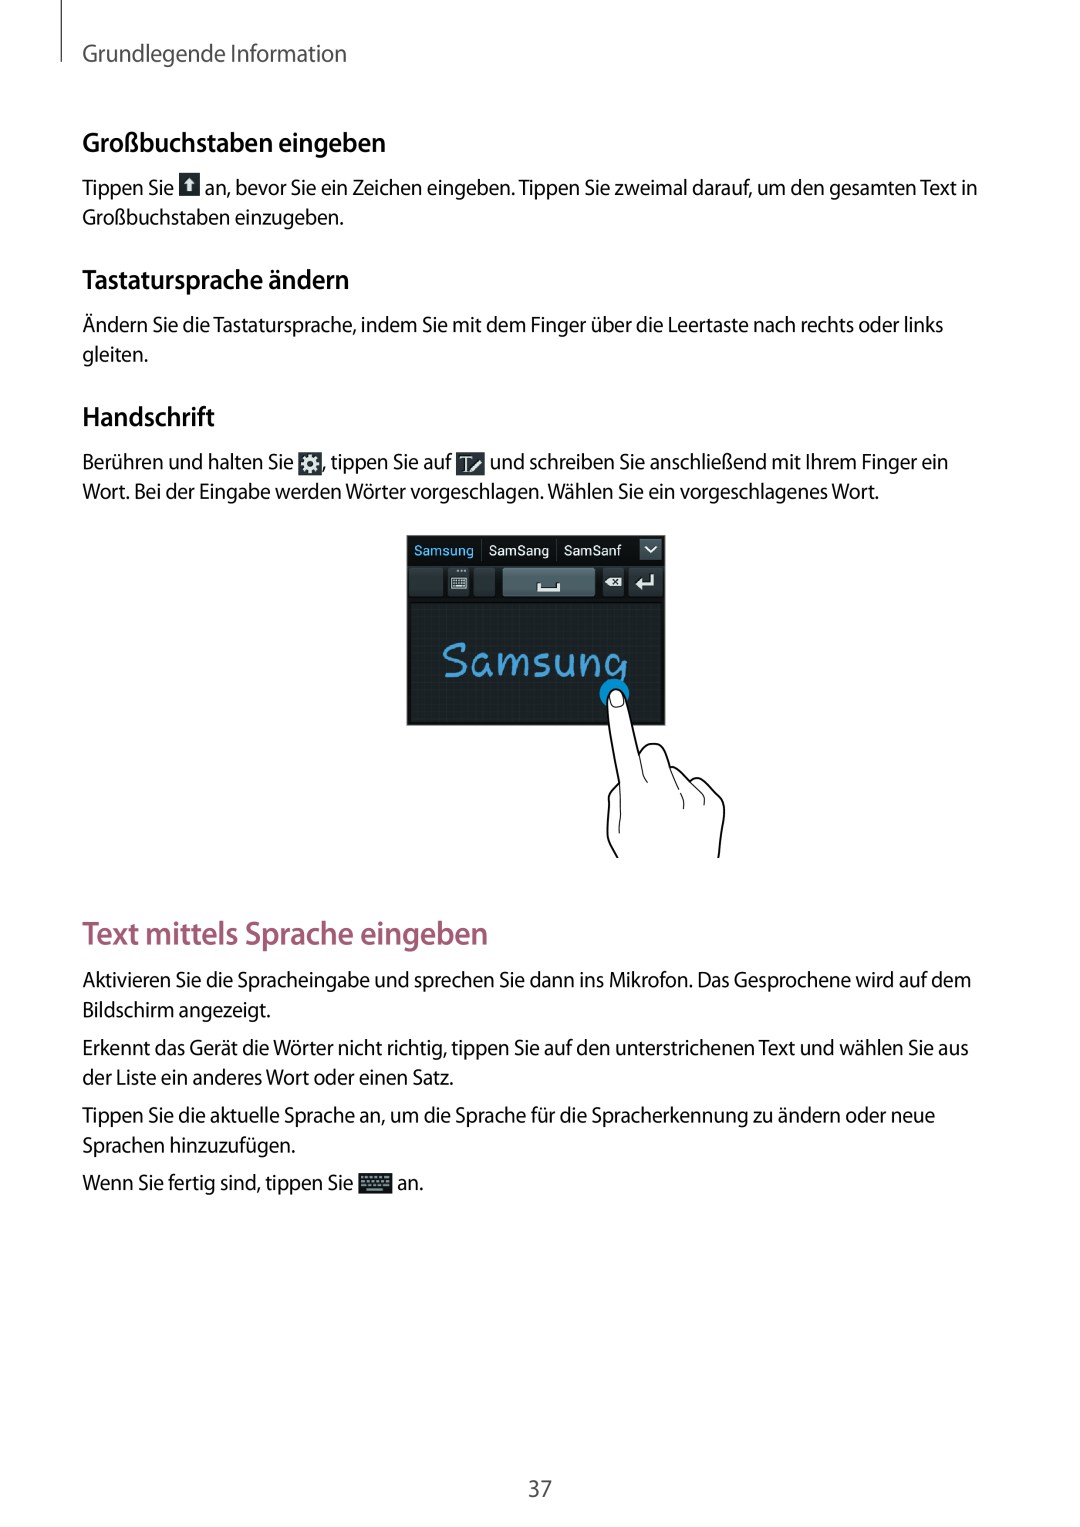 Samsung GT-I8190RWADTM manual Text mittels Sprache eingeben, Großbuchstaben eingeben, Tastatursprache ändern, Handschrift 